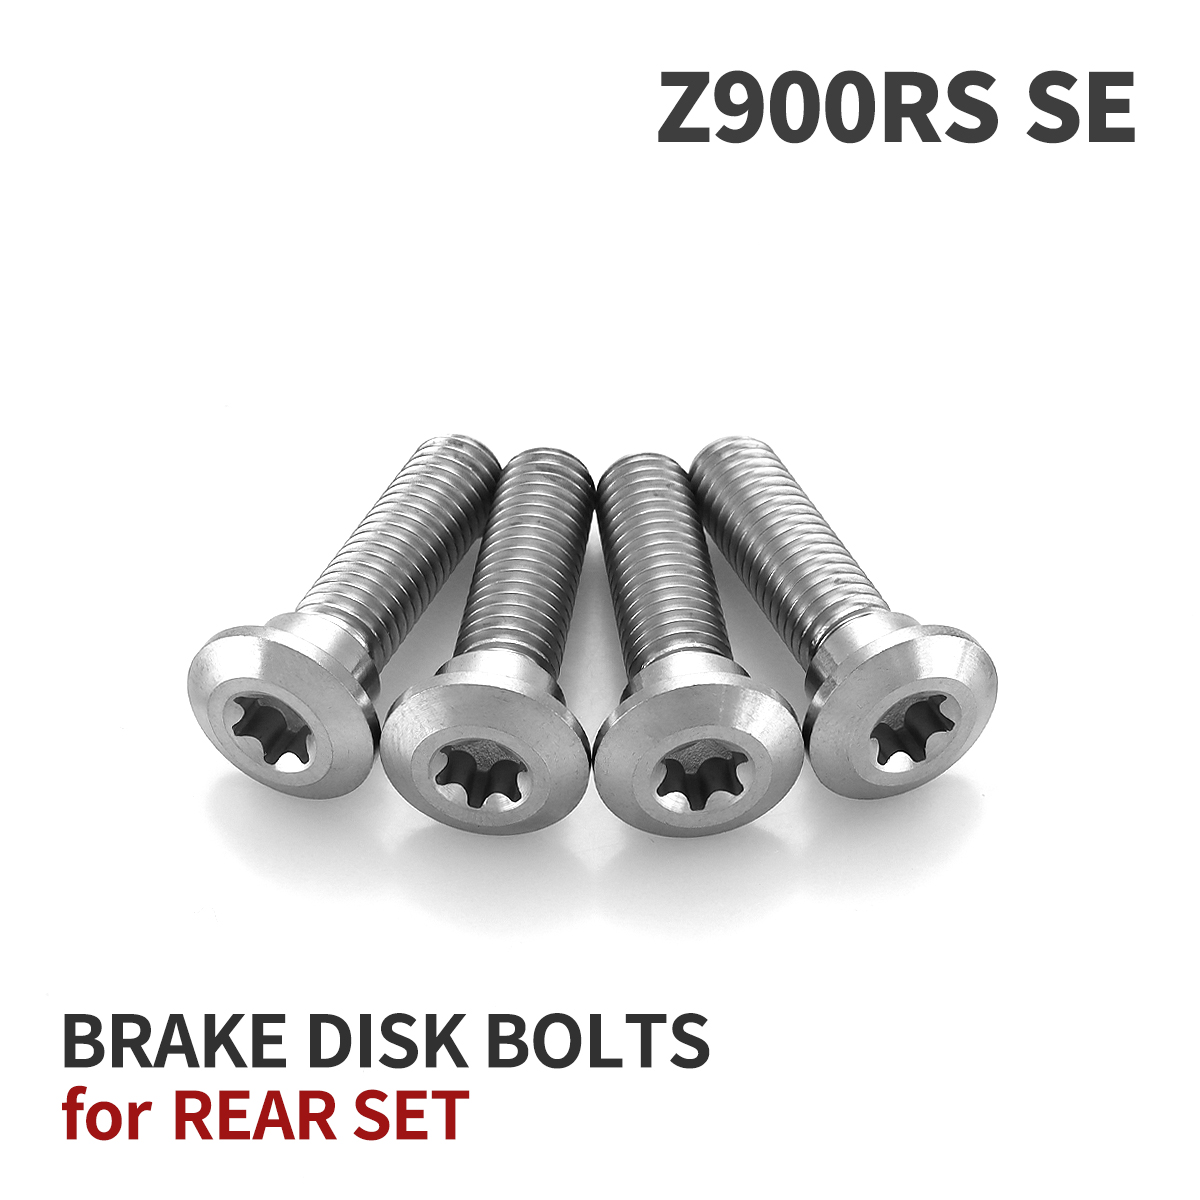 Z900RS SE 64チタン ブレーキディスクローターボルト リア用 4本セット 